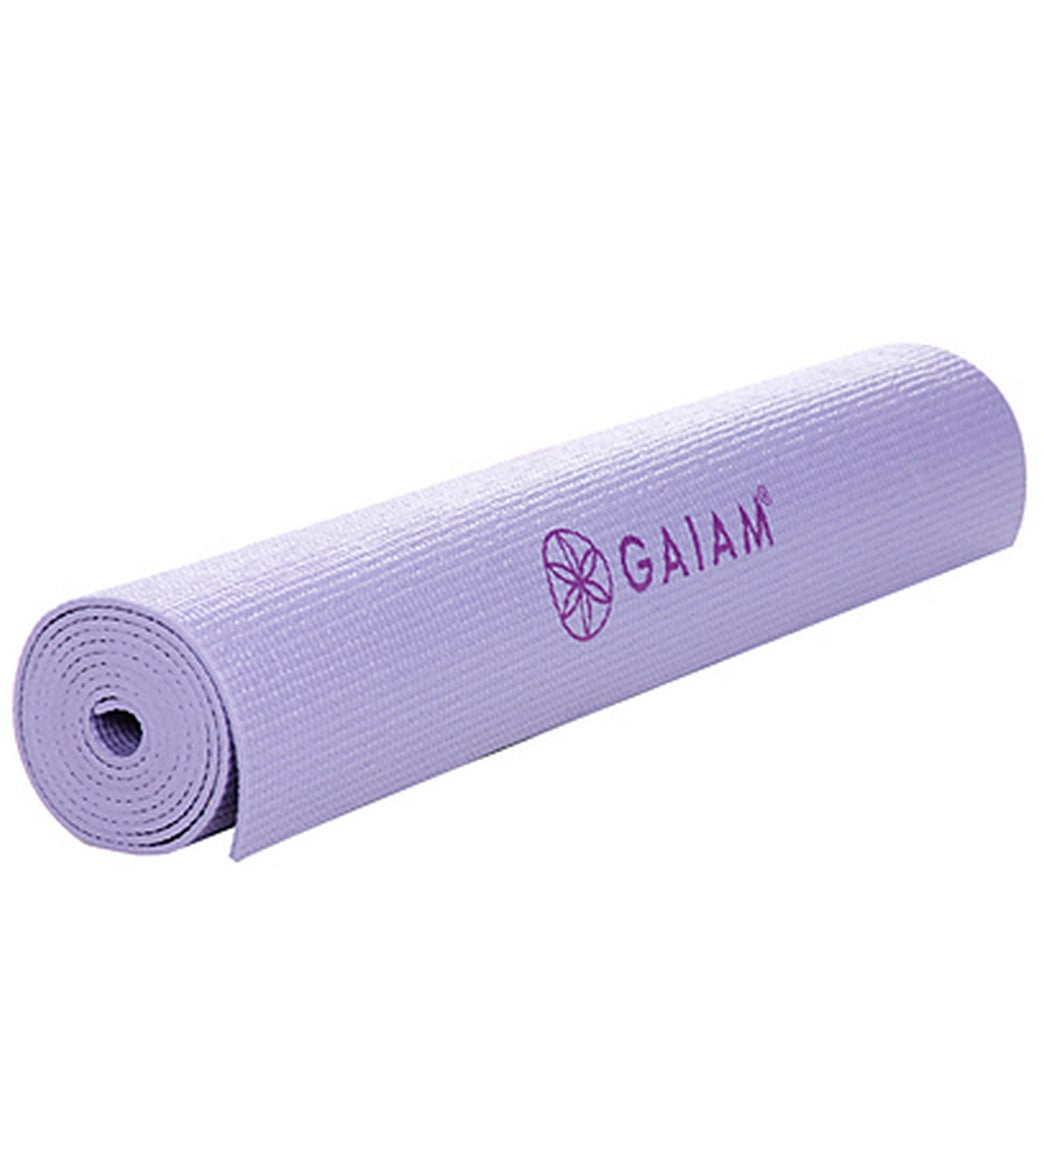 Gaiam Premium Hot Yoga Kit